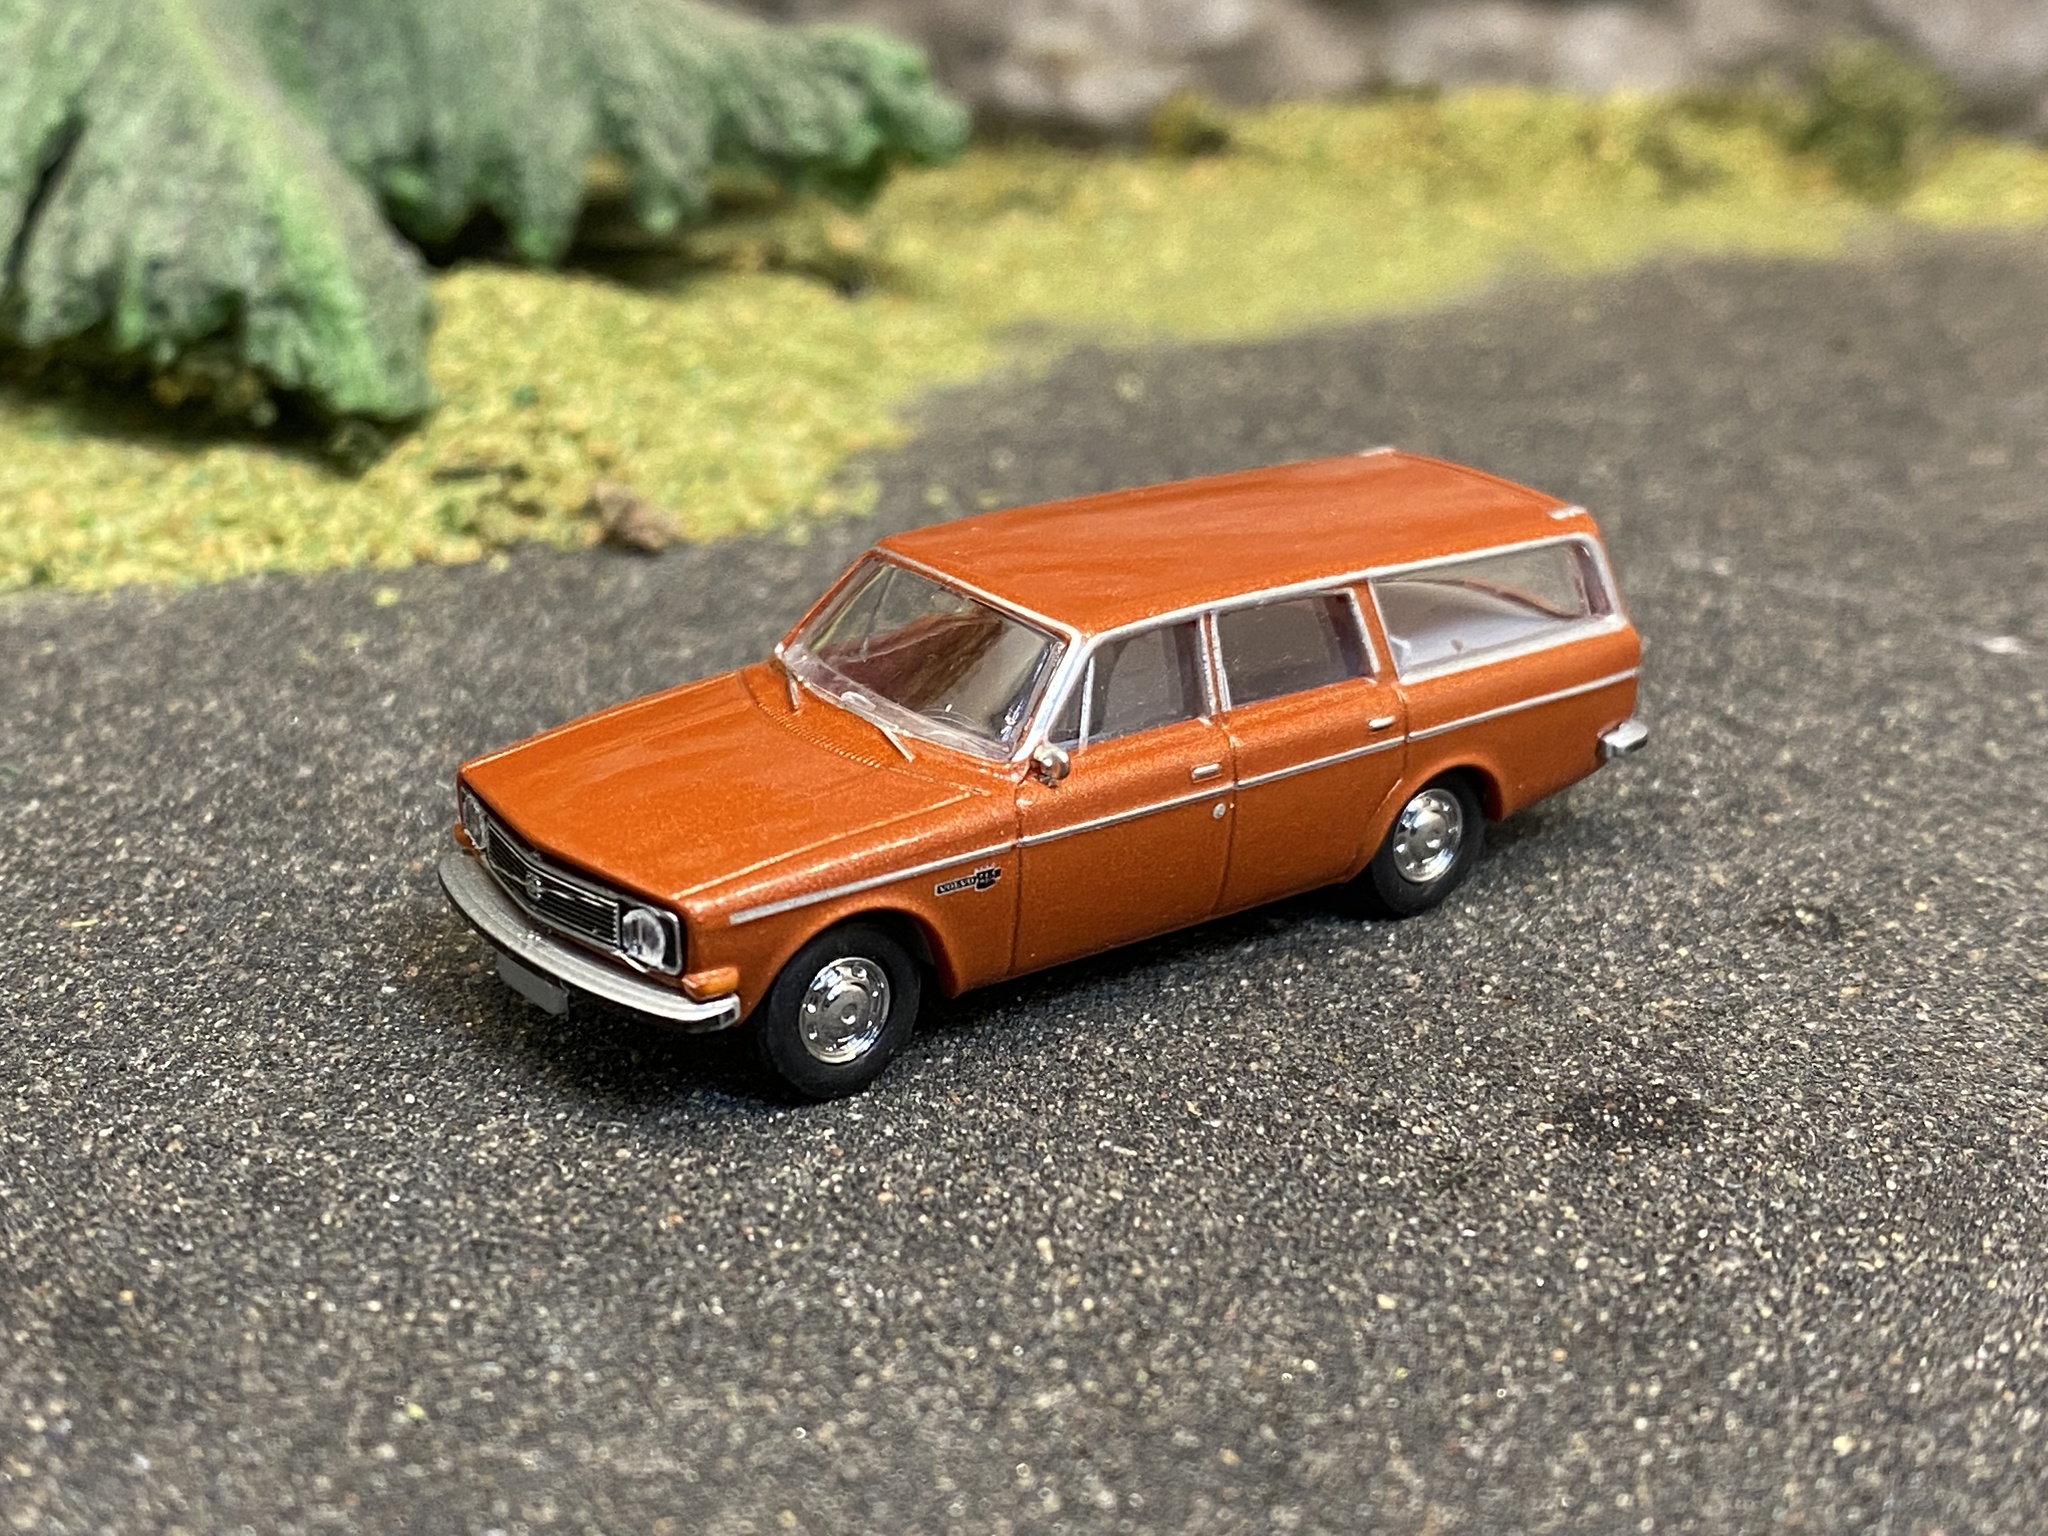 NYHET! Skala 1/87 - Volvo 145, Kopparröd/brun från Brekina